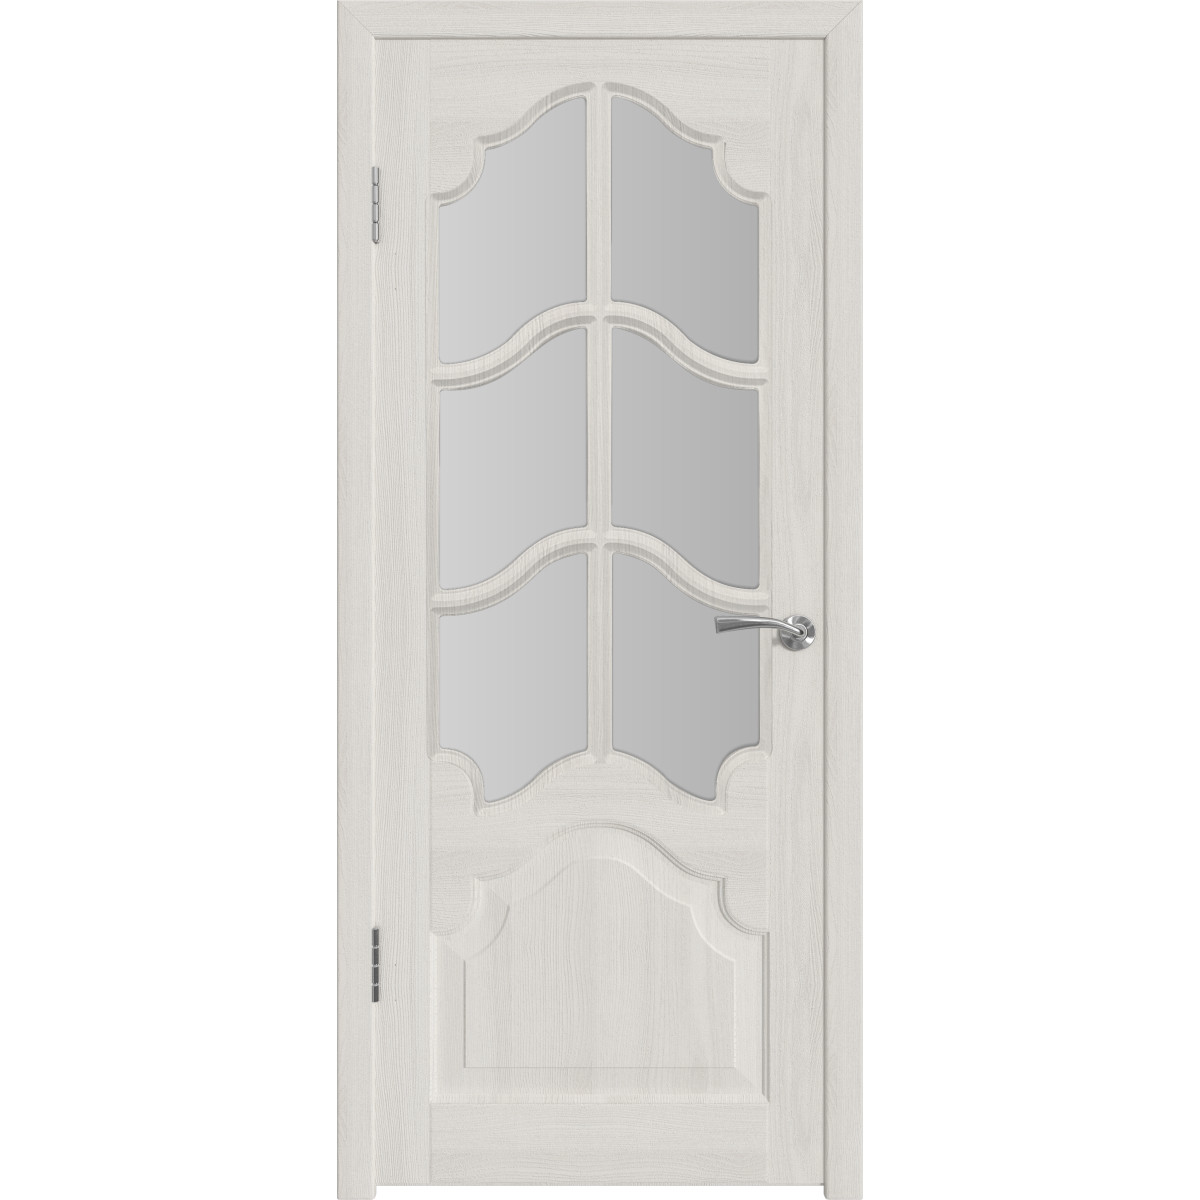 Дверь межкомнатная остеклённая с замком и петлями в комплекте Венеция 60x200 см ПП цвет белёный дуб